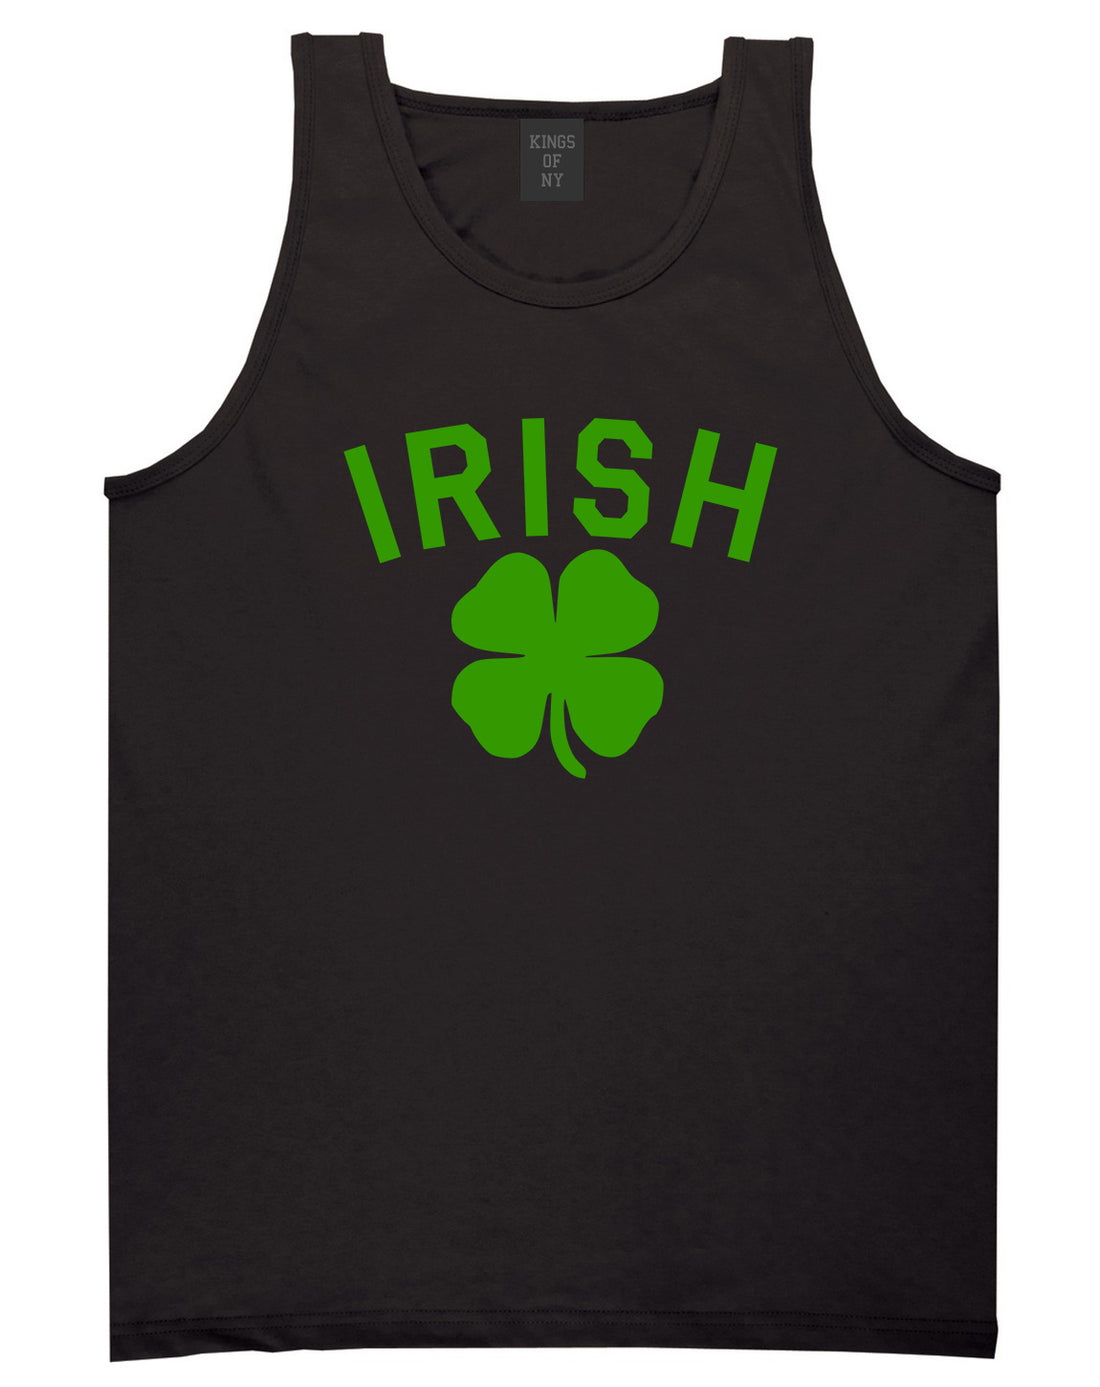 Irish Four Leaf Clover St Patricks Day Mens Tank Top Shirt Black